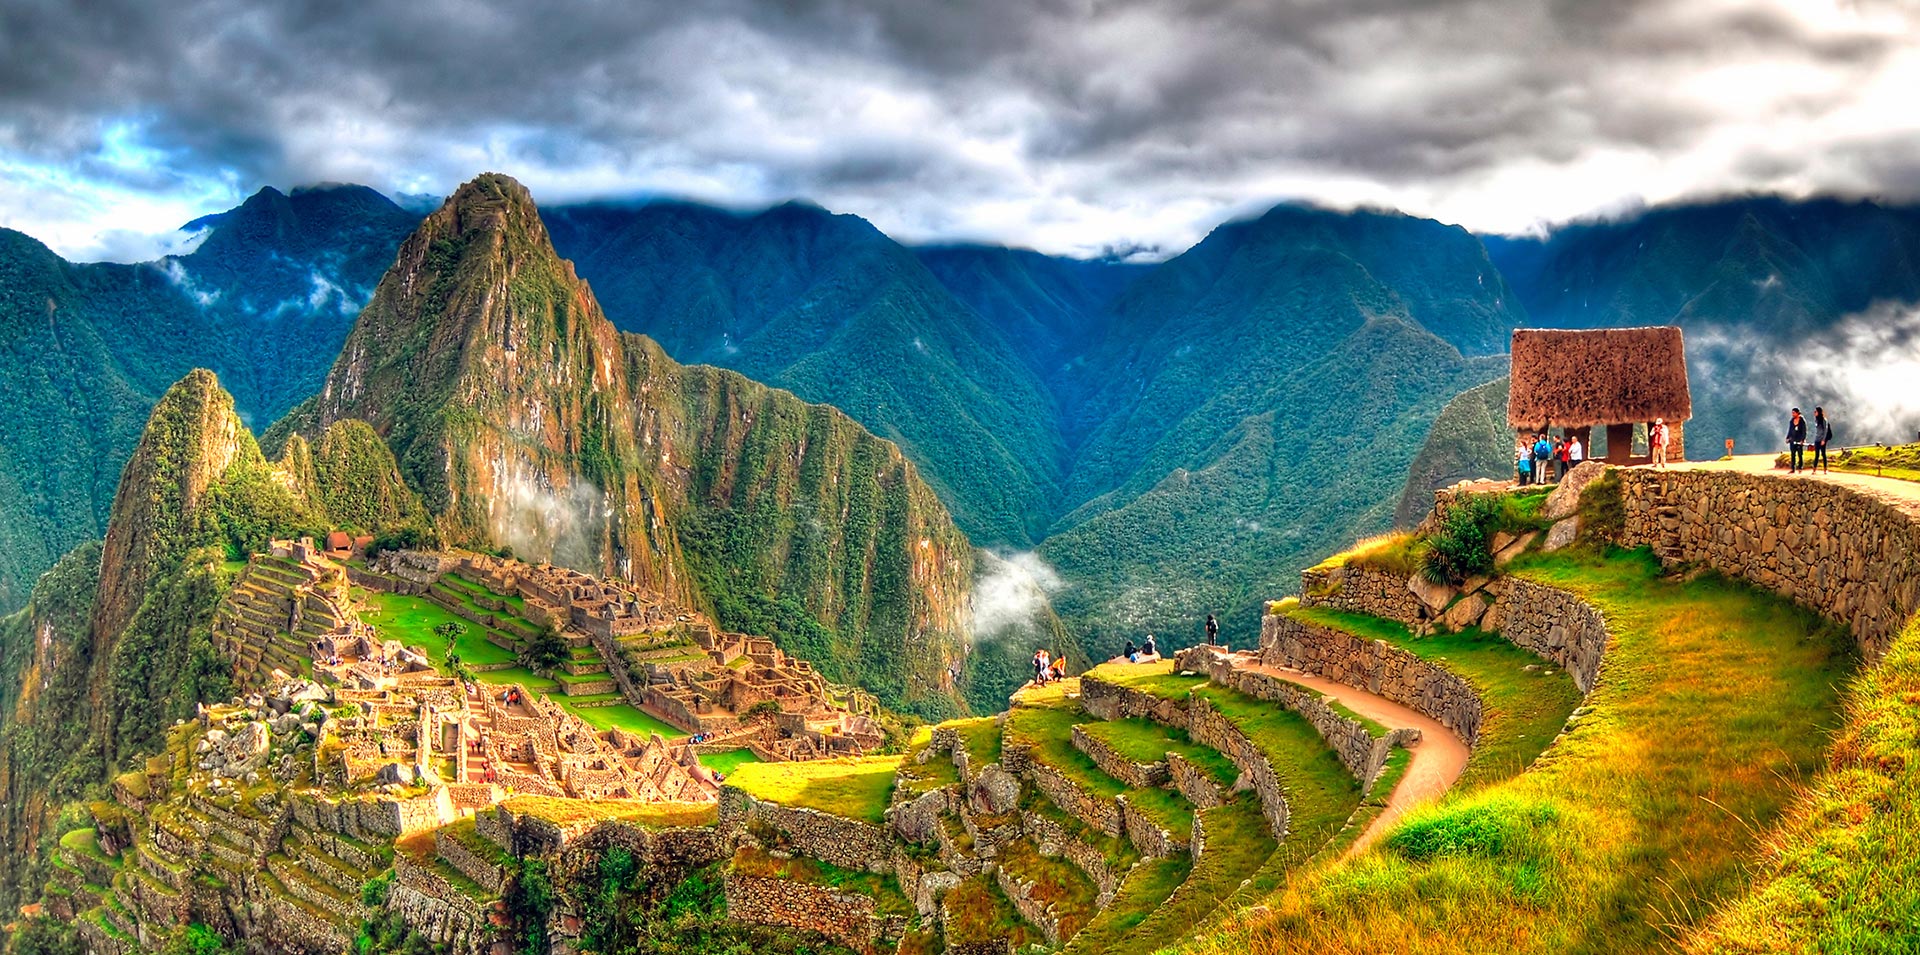 Las Ruinas de Machu Picchu